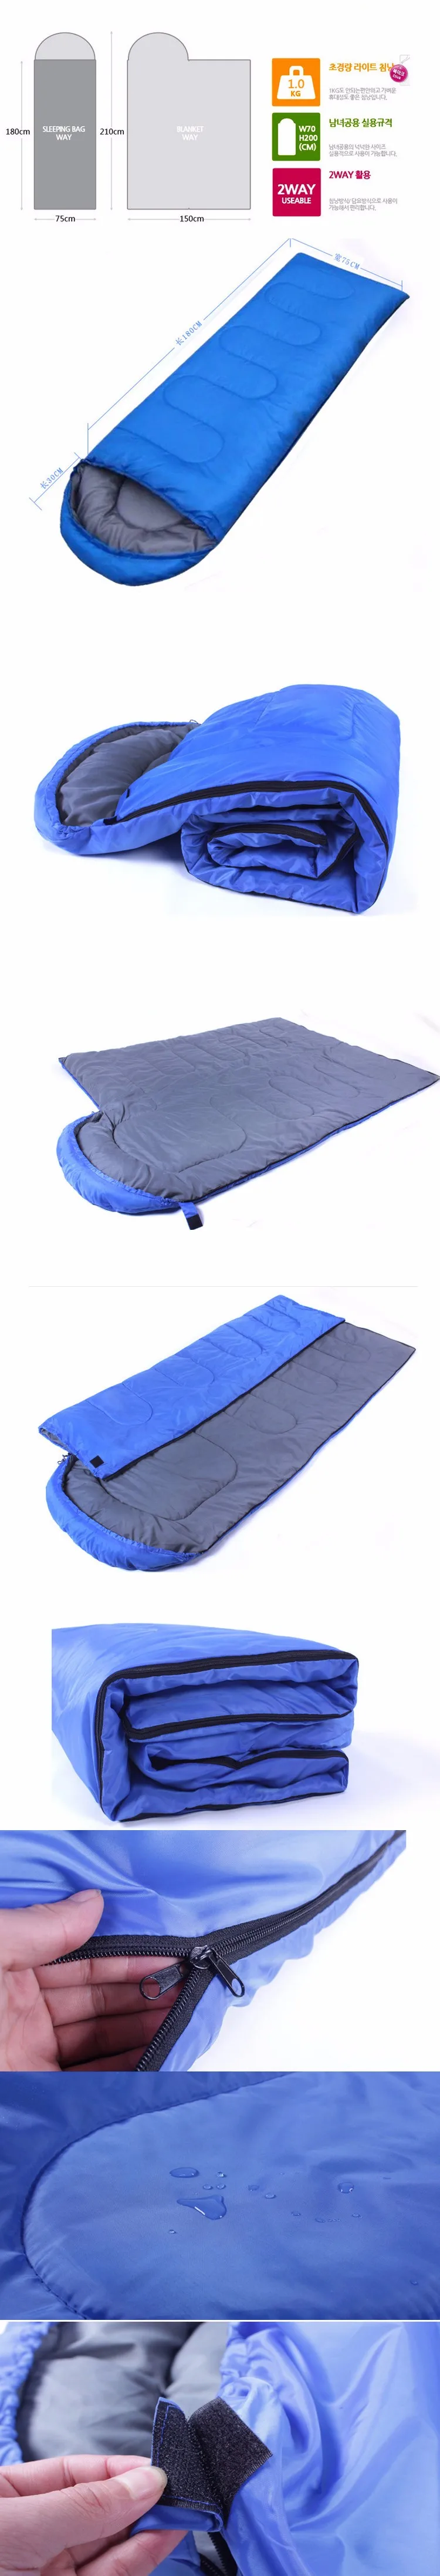 Три цвета хлопка спальный мешок ленивый мешок lamzac laybag воздушный диван надувной воздушный мешок диван лежал спальный мешок кемпинг надувной ленивый мешок ламзак надувной мешок надувной лежак